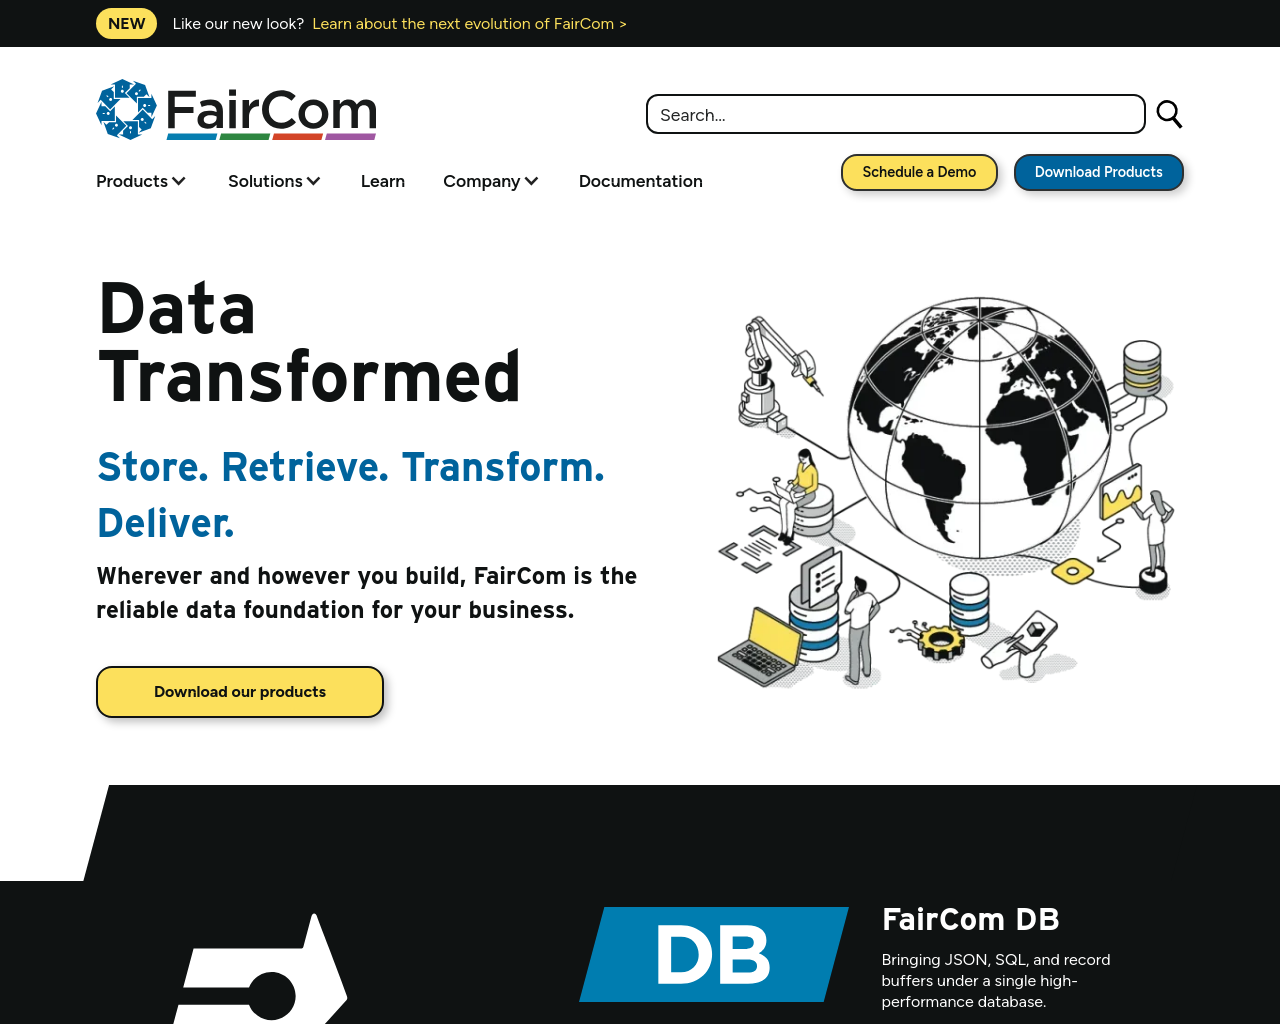 faircom.com